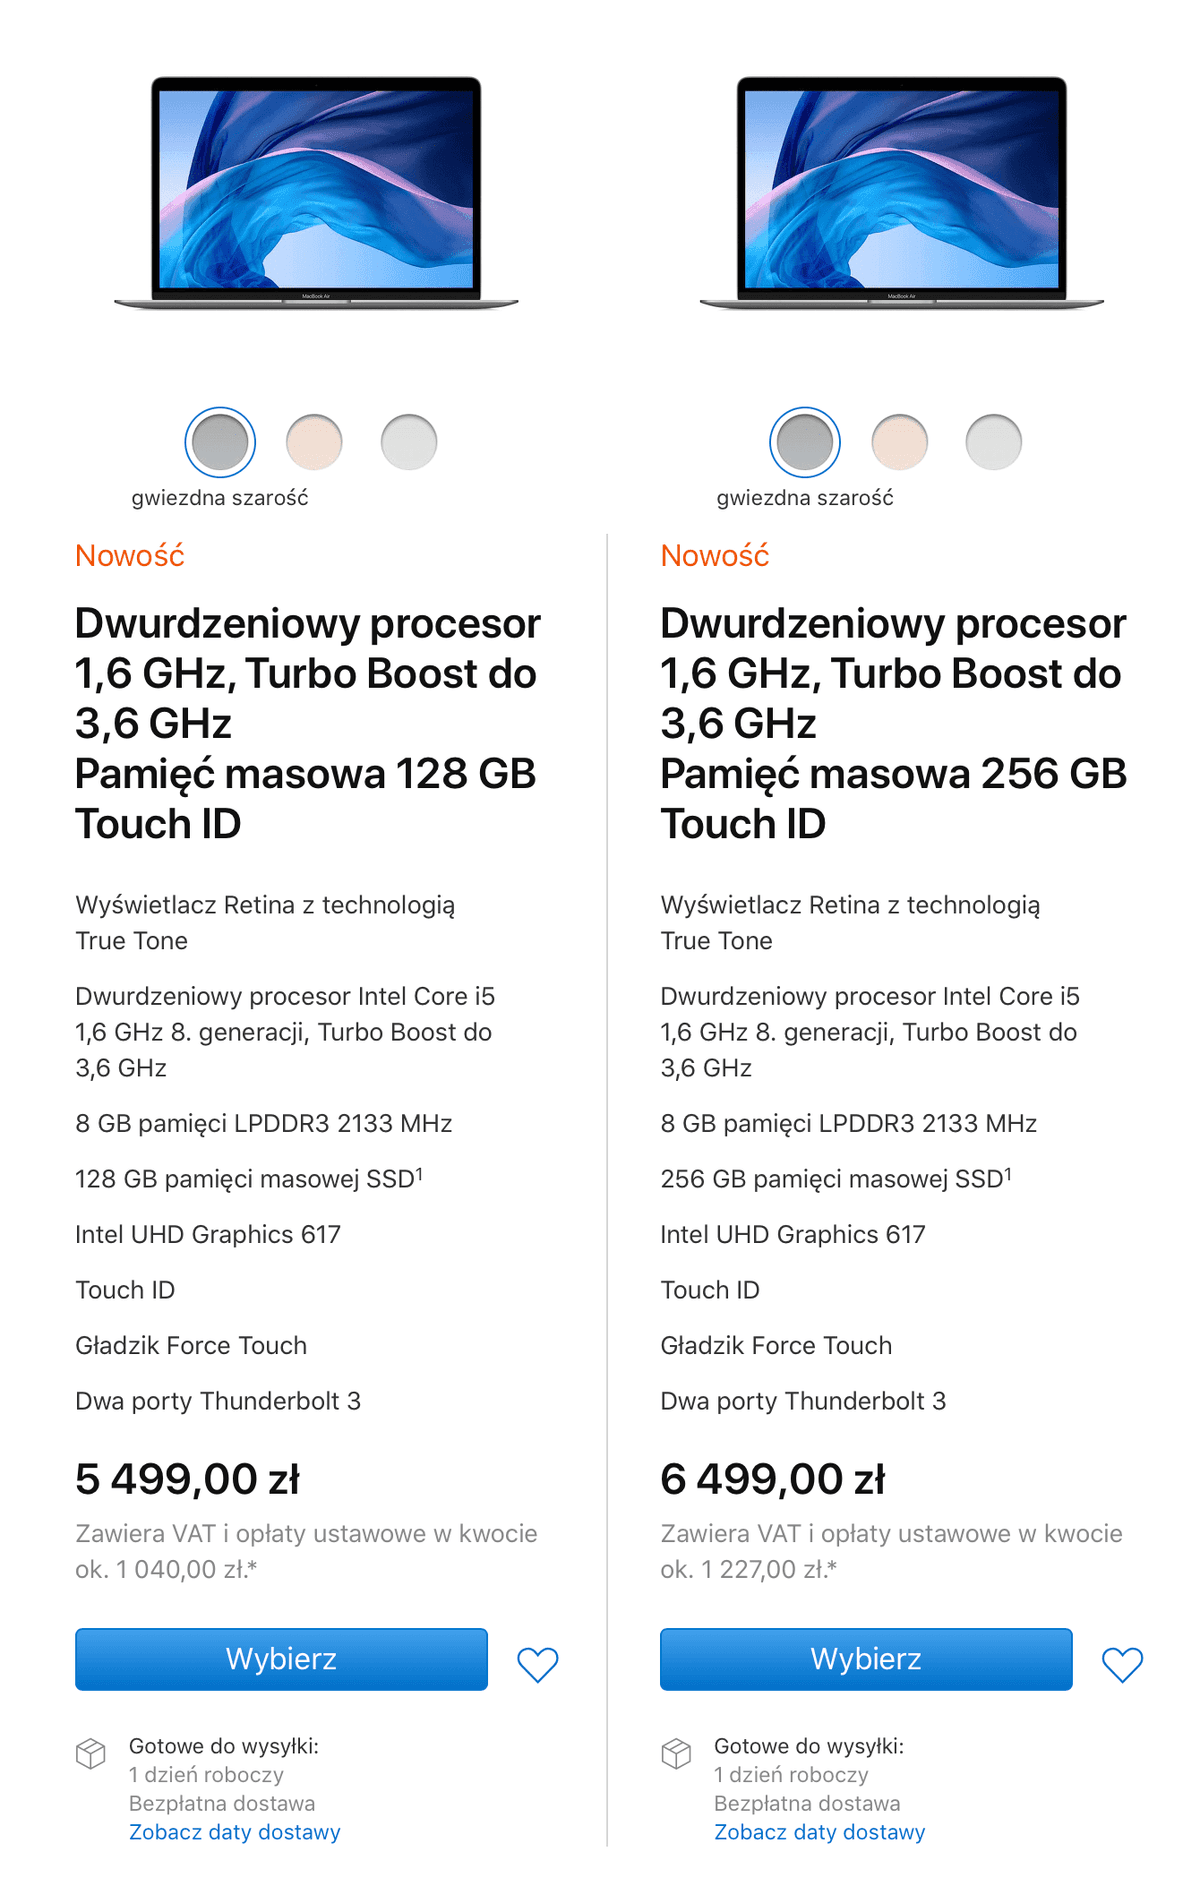 Nowy MacBook Air 2019 - cena i specyfikacja  class="wp-image-968233" title="Nowy MacBook Air 2019 - cena i specyfikacja " 